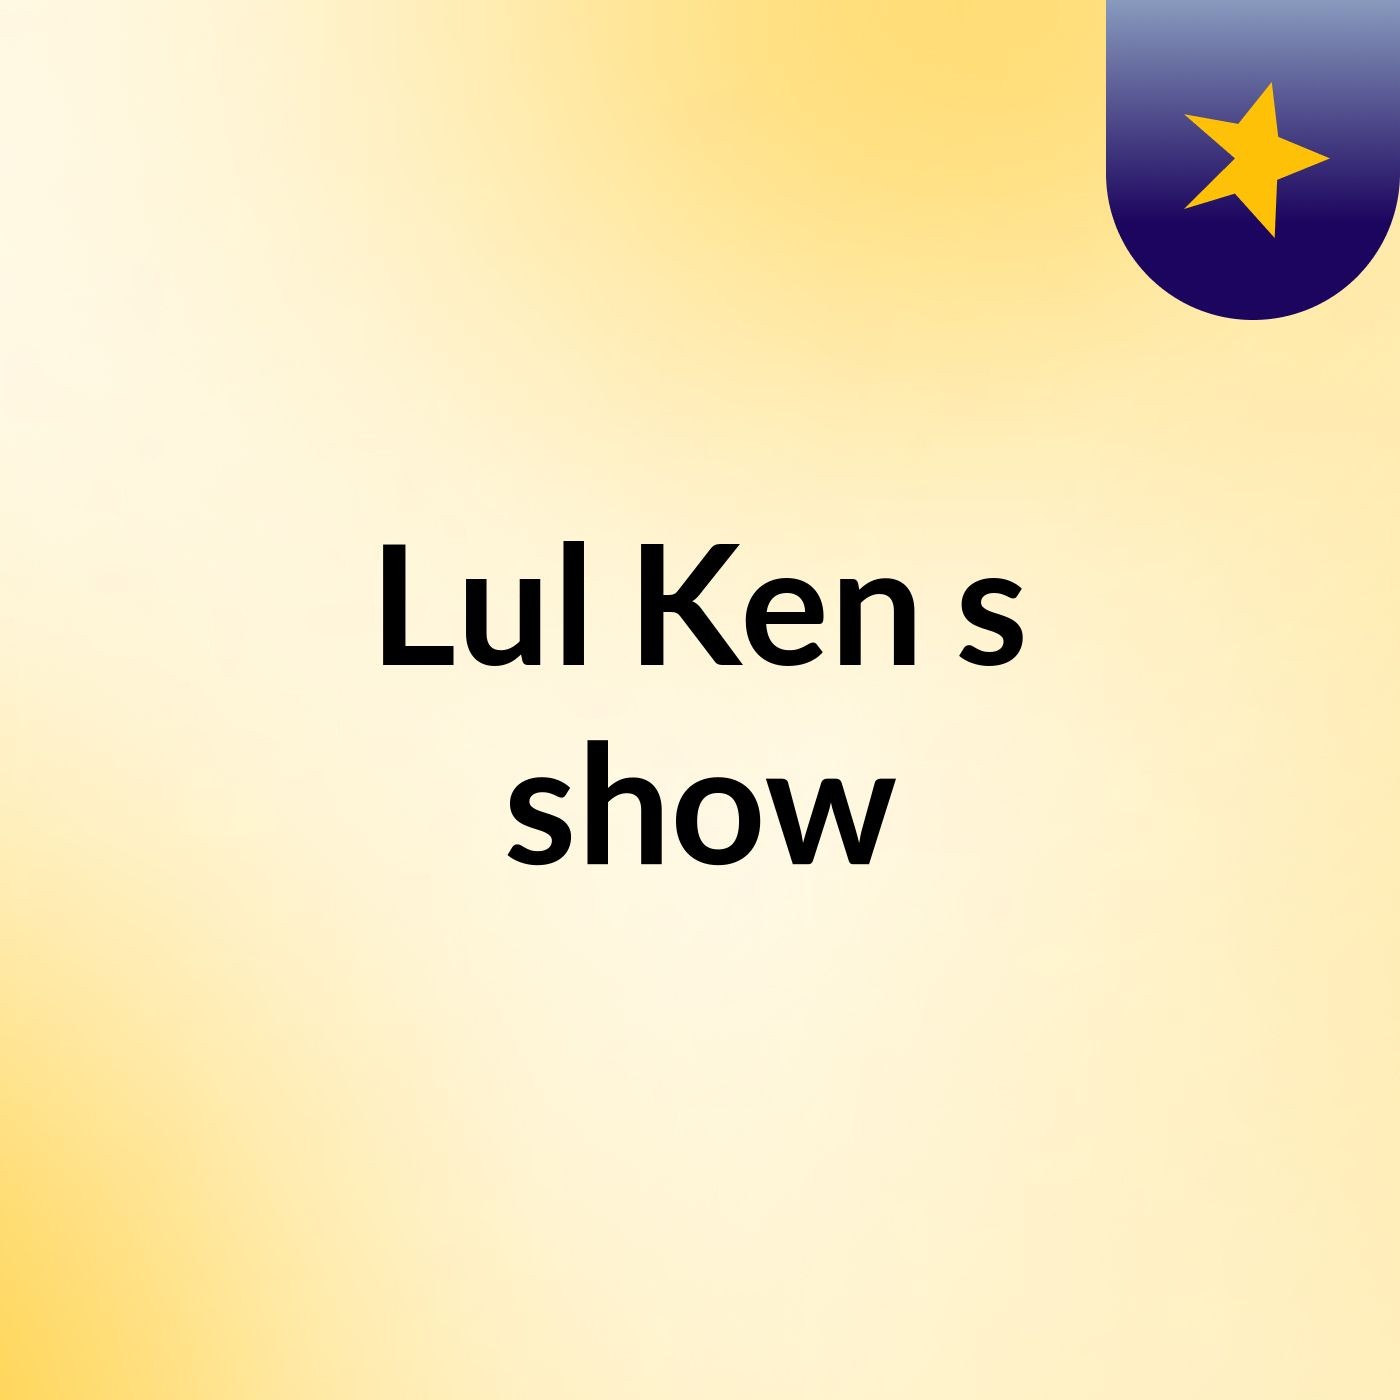 Lul Ken's show